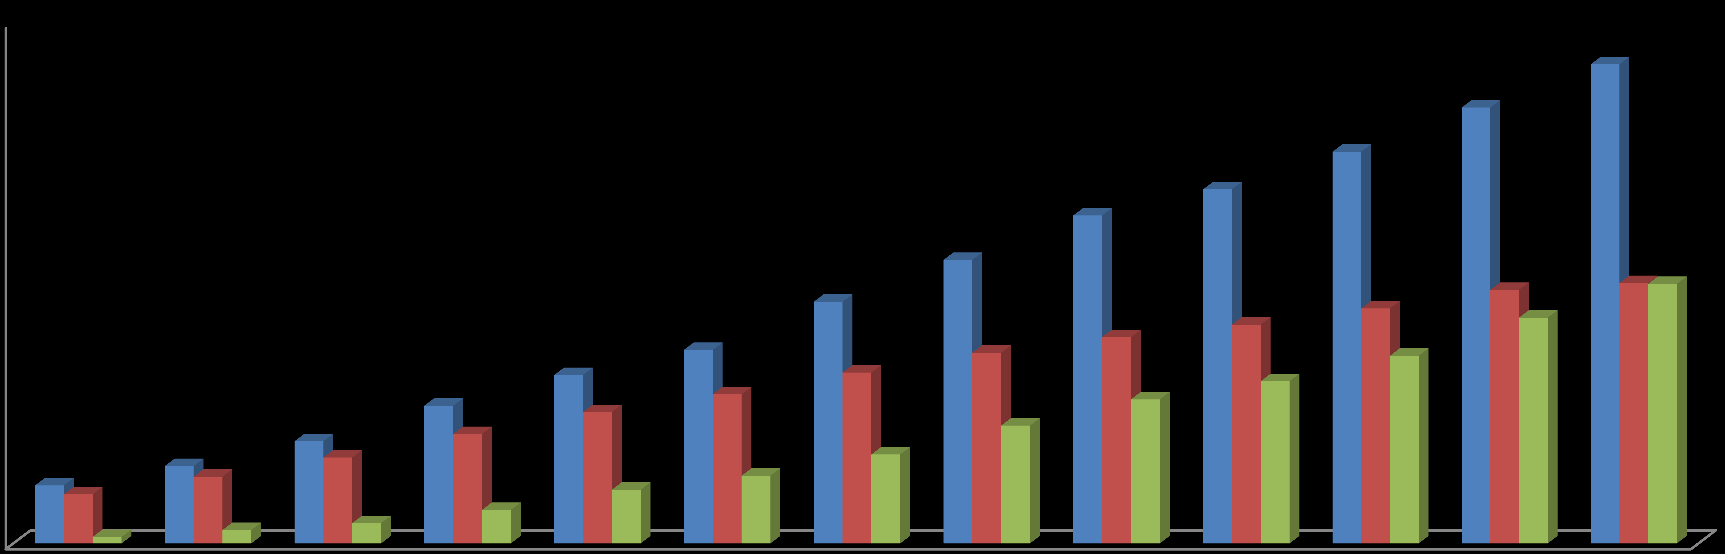 02 LTE 혁명 사업자간 경쟁이 LTE로의 조기 진화를 촉진 - LTE 가입자: 1,730만명 (2013년1월), 전체 이동동신 가입자의 36% - LTE 전환 비율 : 29% (2012) 70% (2013 예상) kt는 국내 3사 중 가장 늦게 LTE를 출시하였으나 현재 급속히 가입자 증가를 보이고 있음. (SKT & LGU+: 2011년7월 Vs.